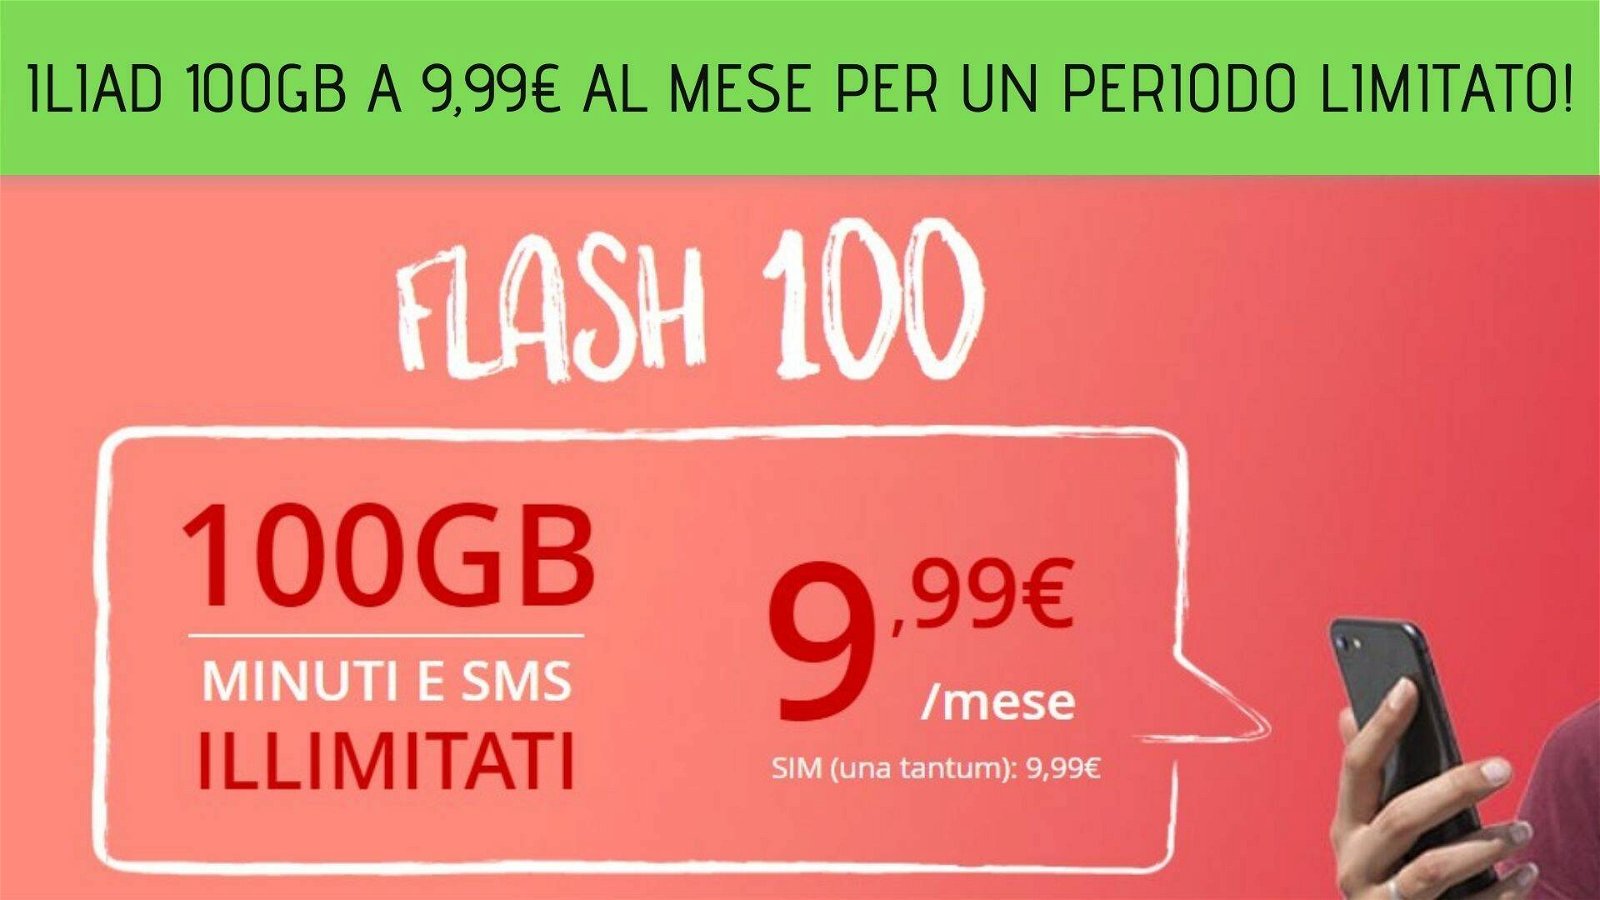 Immagine di iliad 100GB a 9,99€ al mese per un periodo limitato!